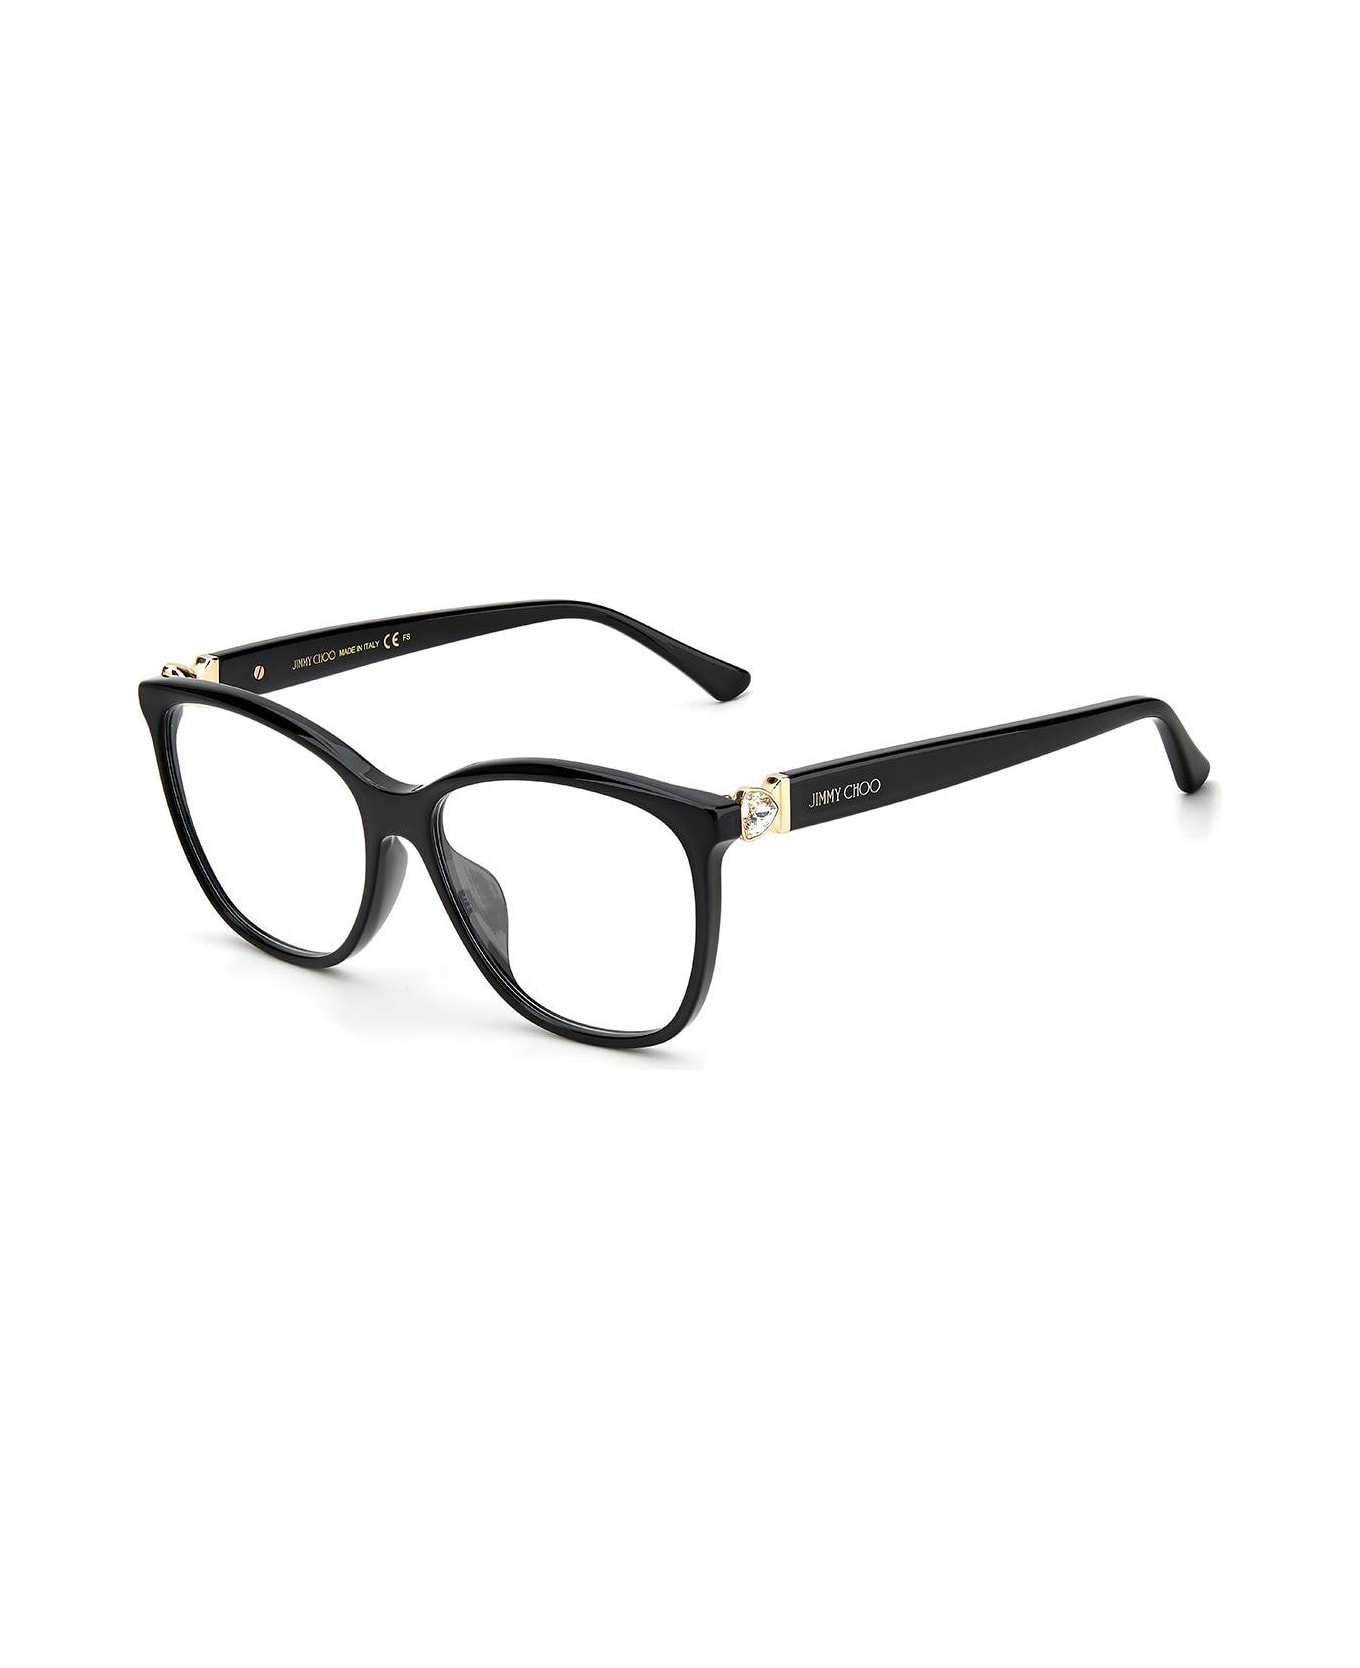 Jimmy Choo Eyewear Jc318/g Glasses - Nero アイウェア